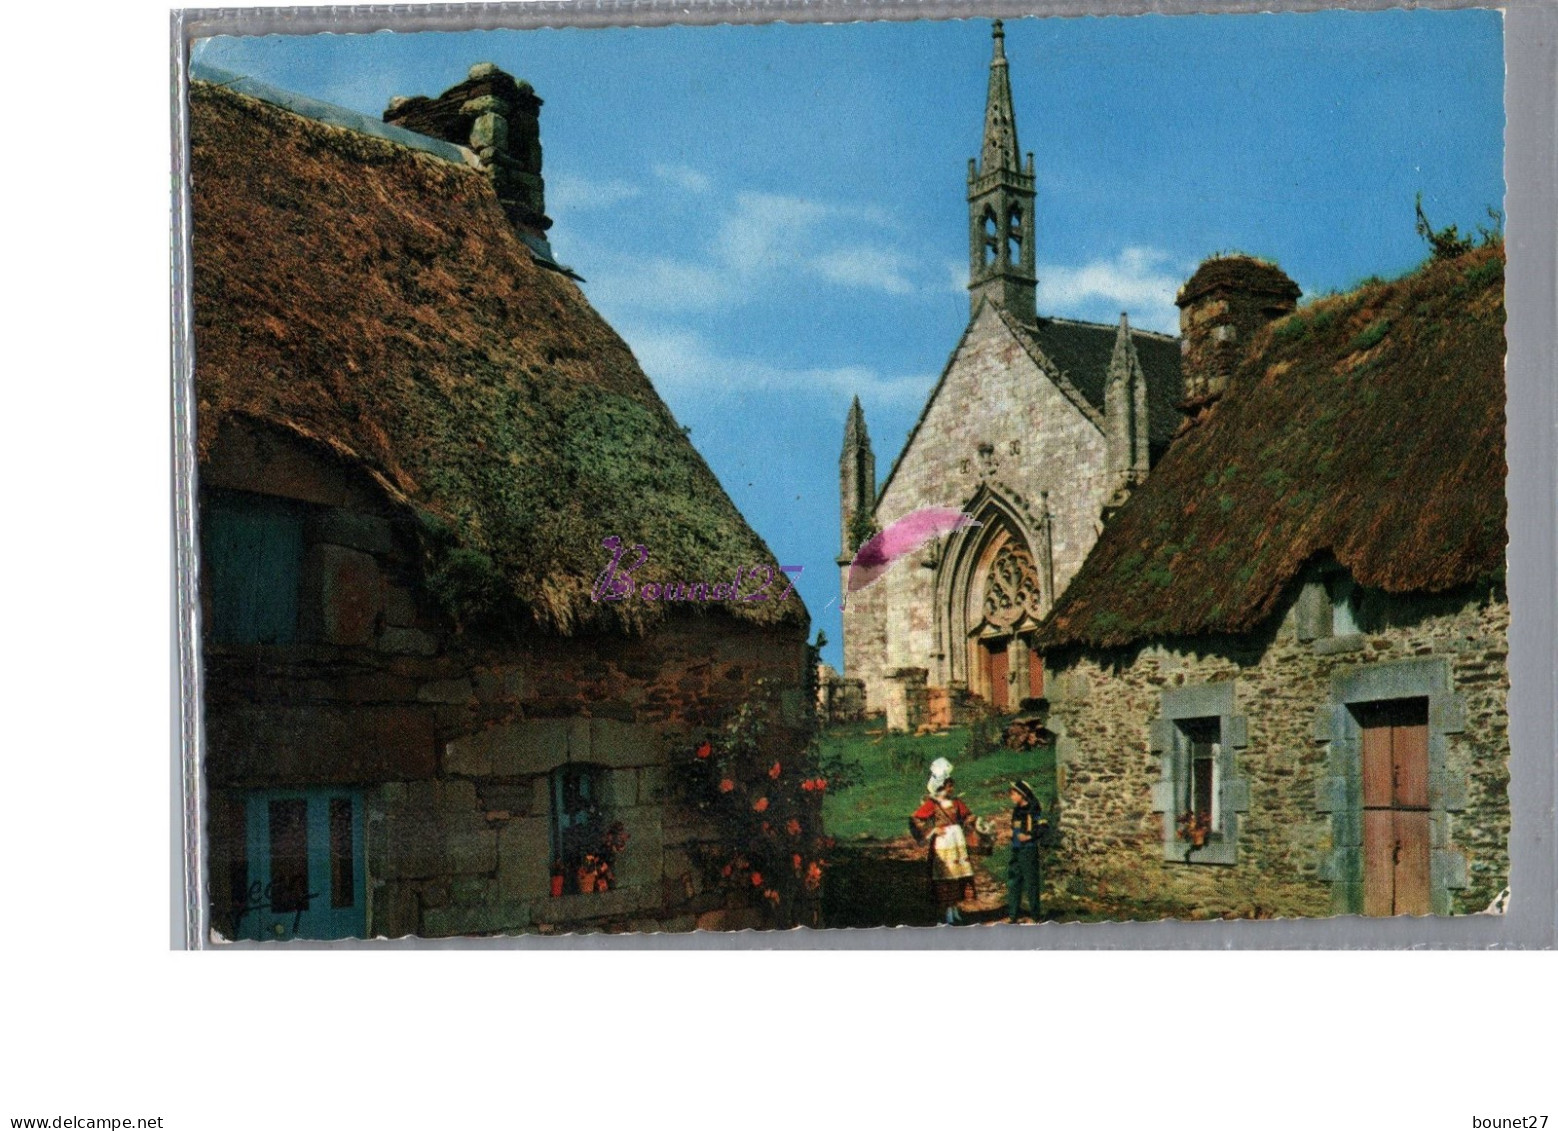 BRETAGNE - Un Petit Village Breton Folklore Femme Avec Enfant Costume Coiffe Devant Une Eglise 1974 - Bretagne